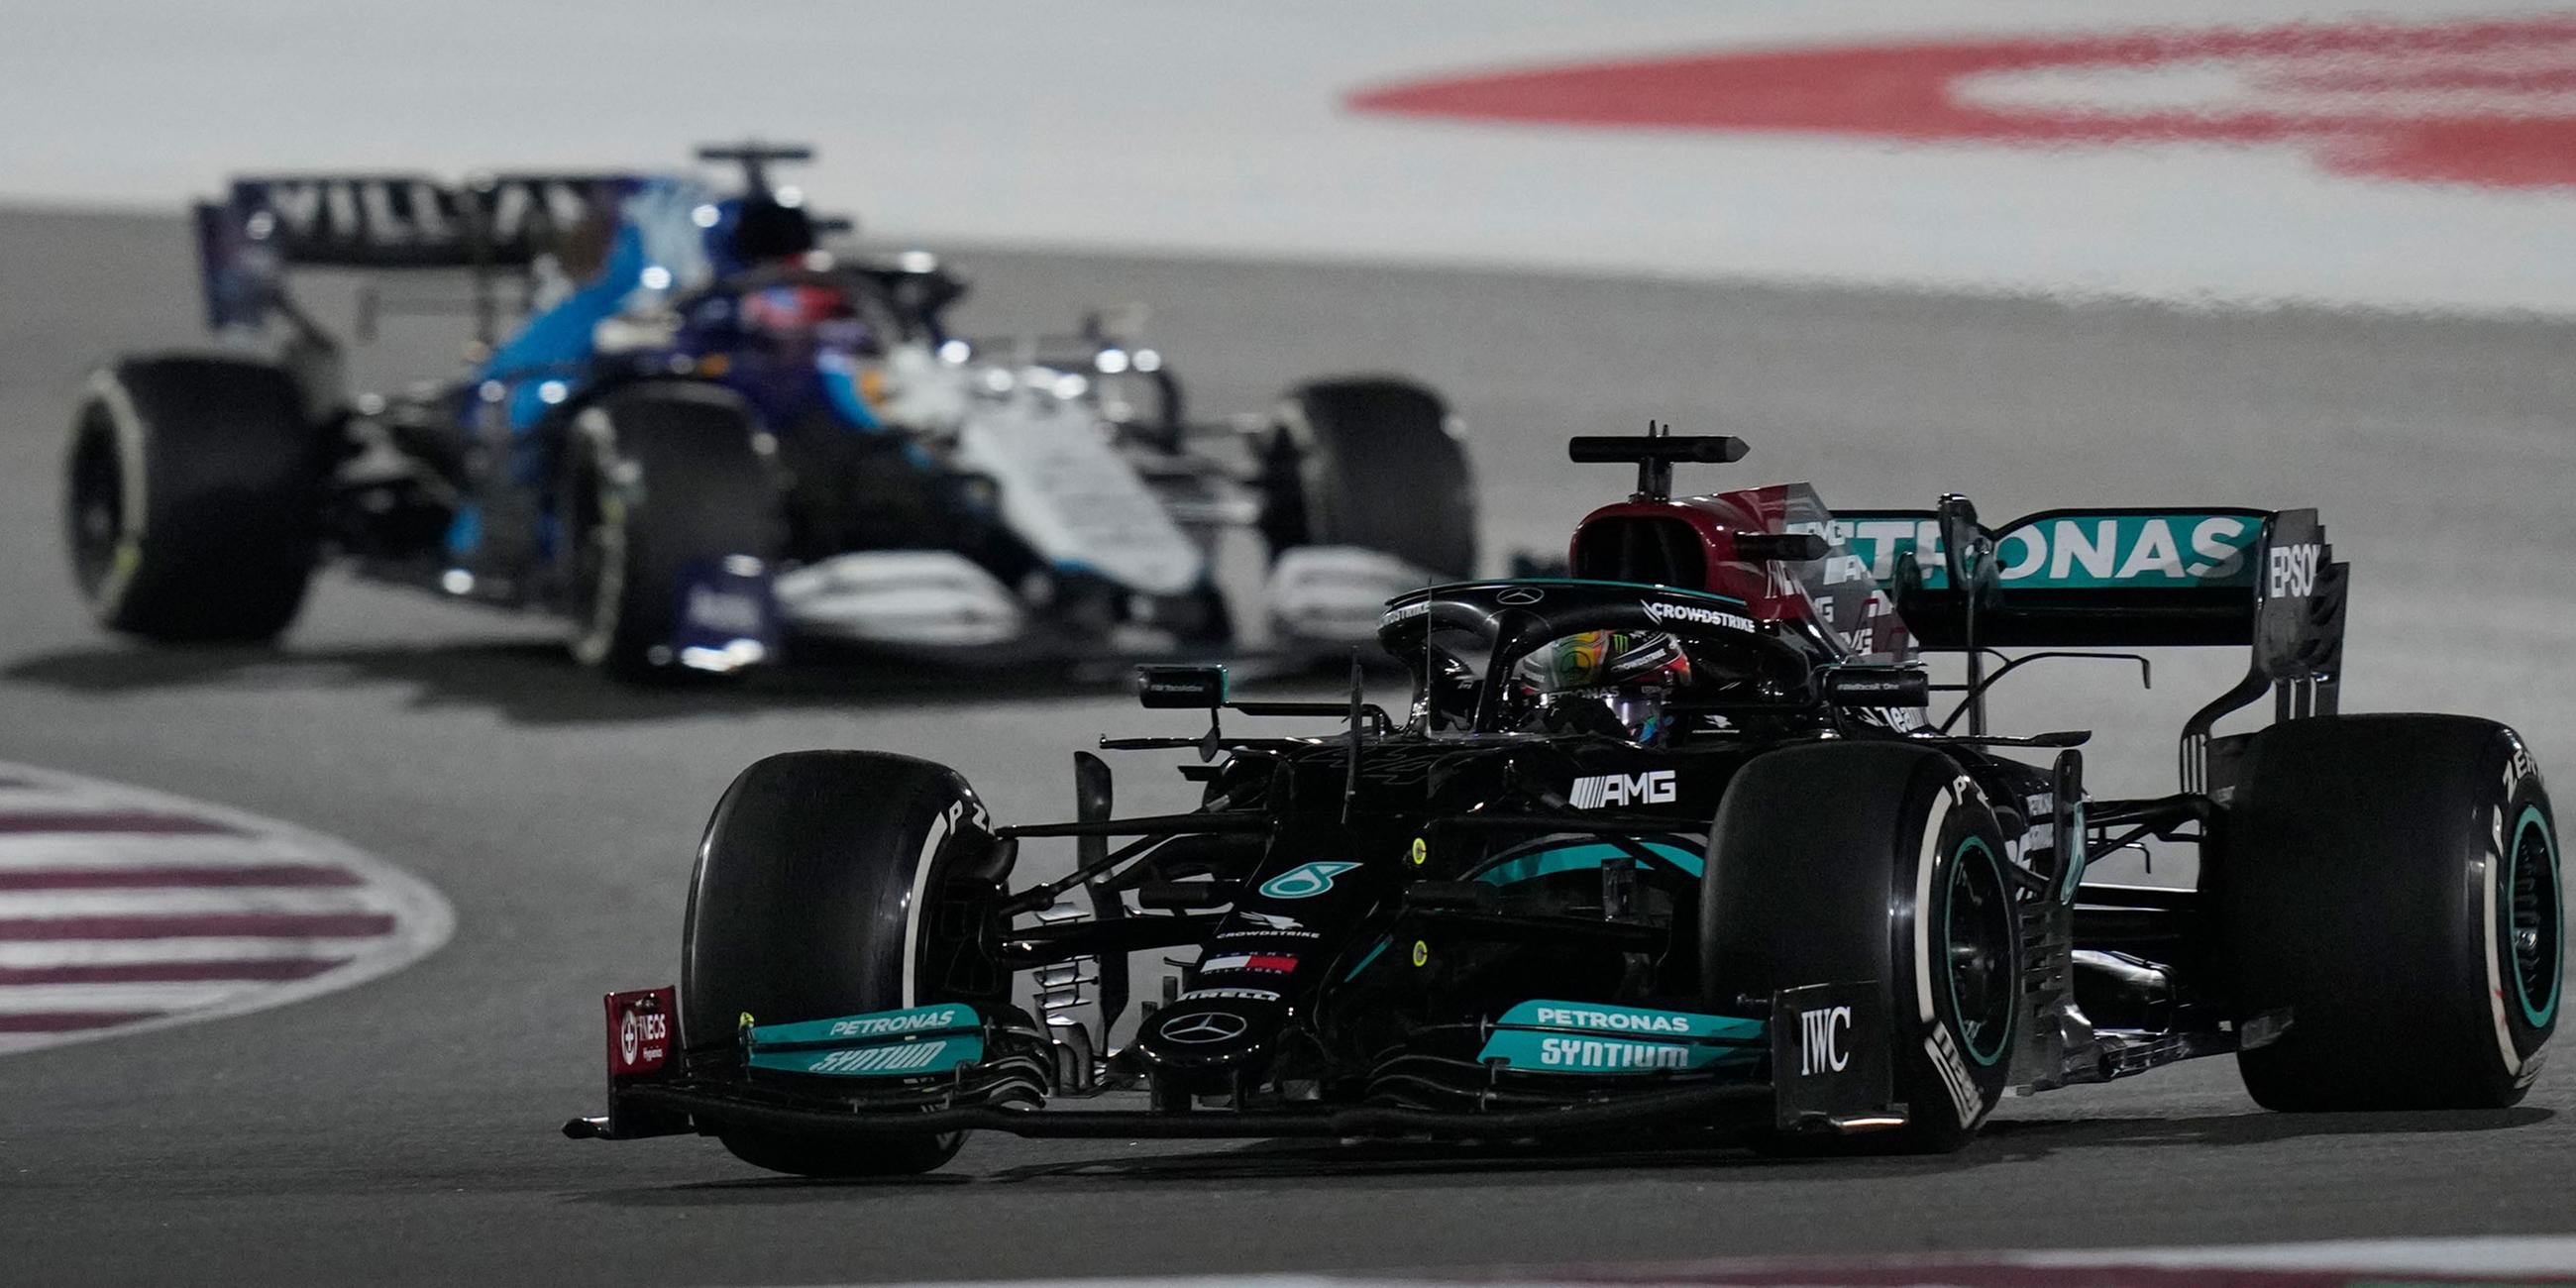 21.11.2021, Katar, Lusail: Motorsport, Formel-1-Weltmeisterschaft, Grand Prix von Katar: Mercedes-Pilot Lewis Hamilton aus Großbritannien in Aktion.